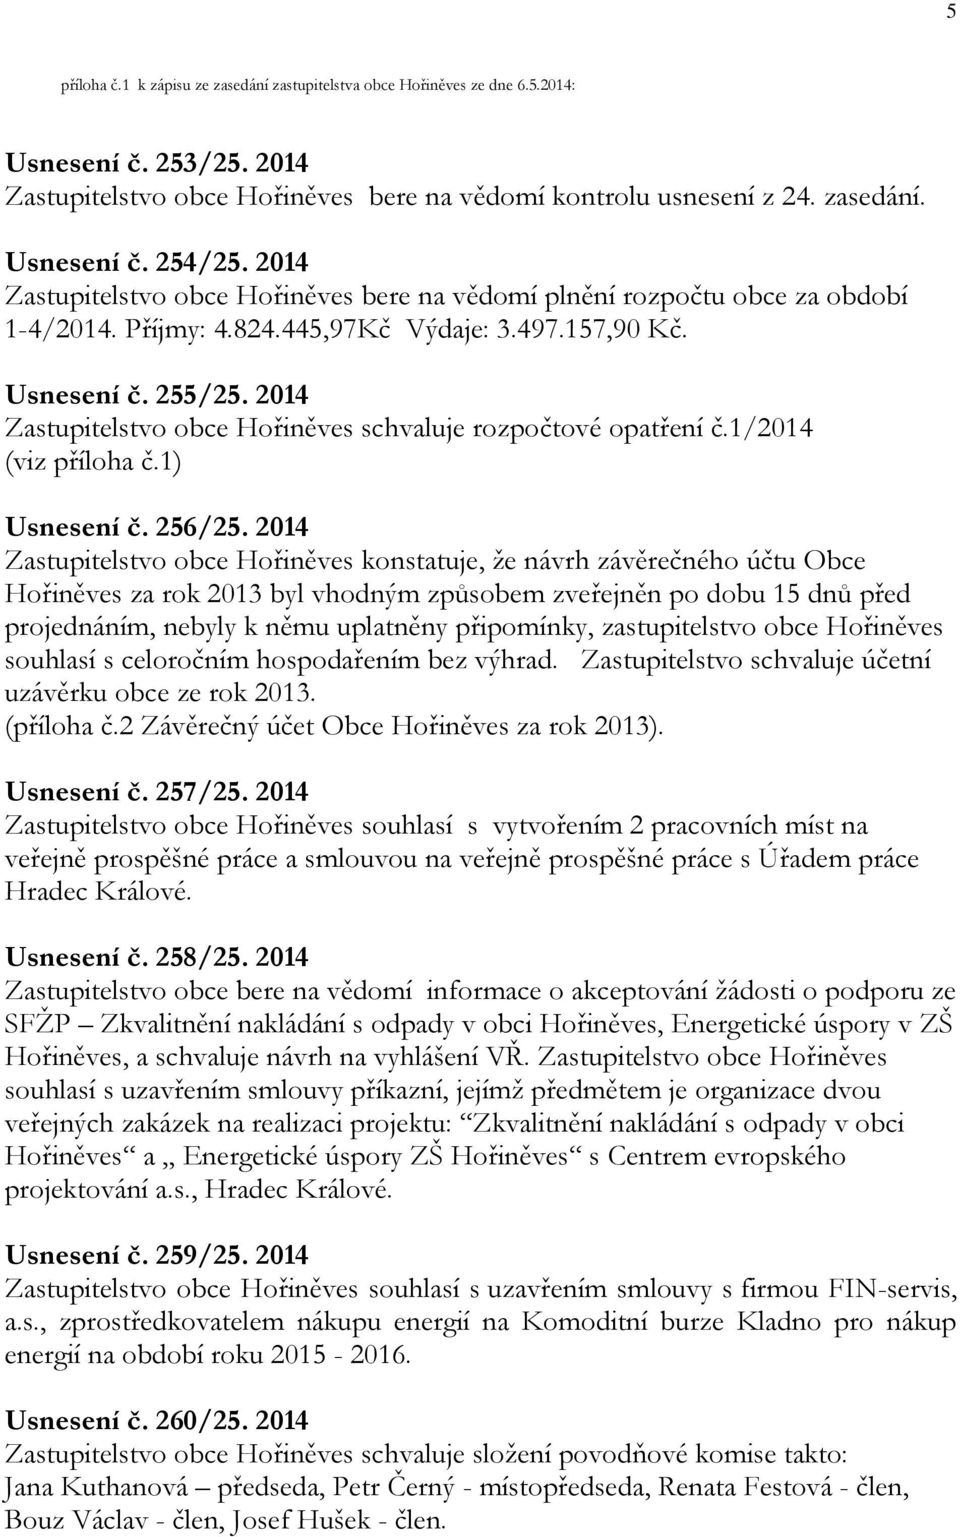 2014 Zastupitelstvo obce Hořiněves schvaluje rozpočtové opatření č.1/2014 (viz příloha č.1) Usnesení č. 256/25.